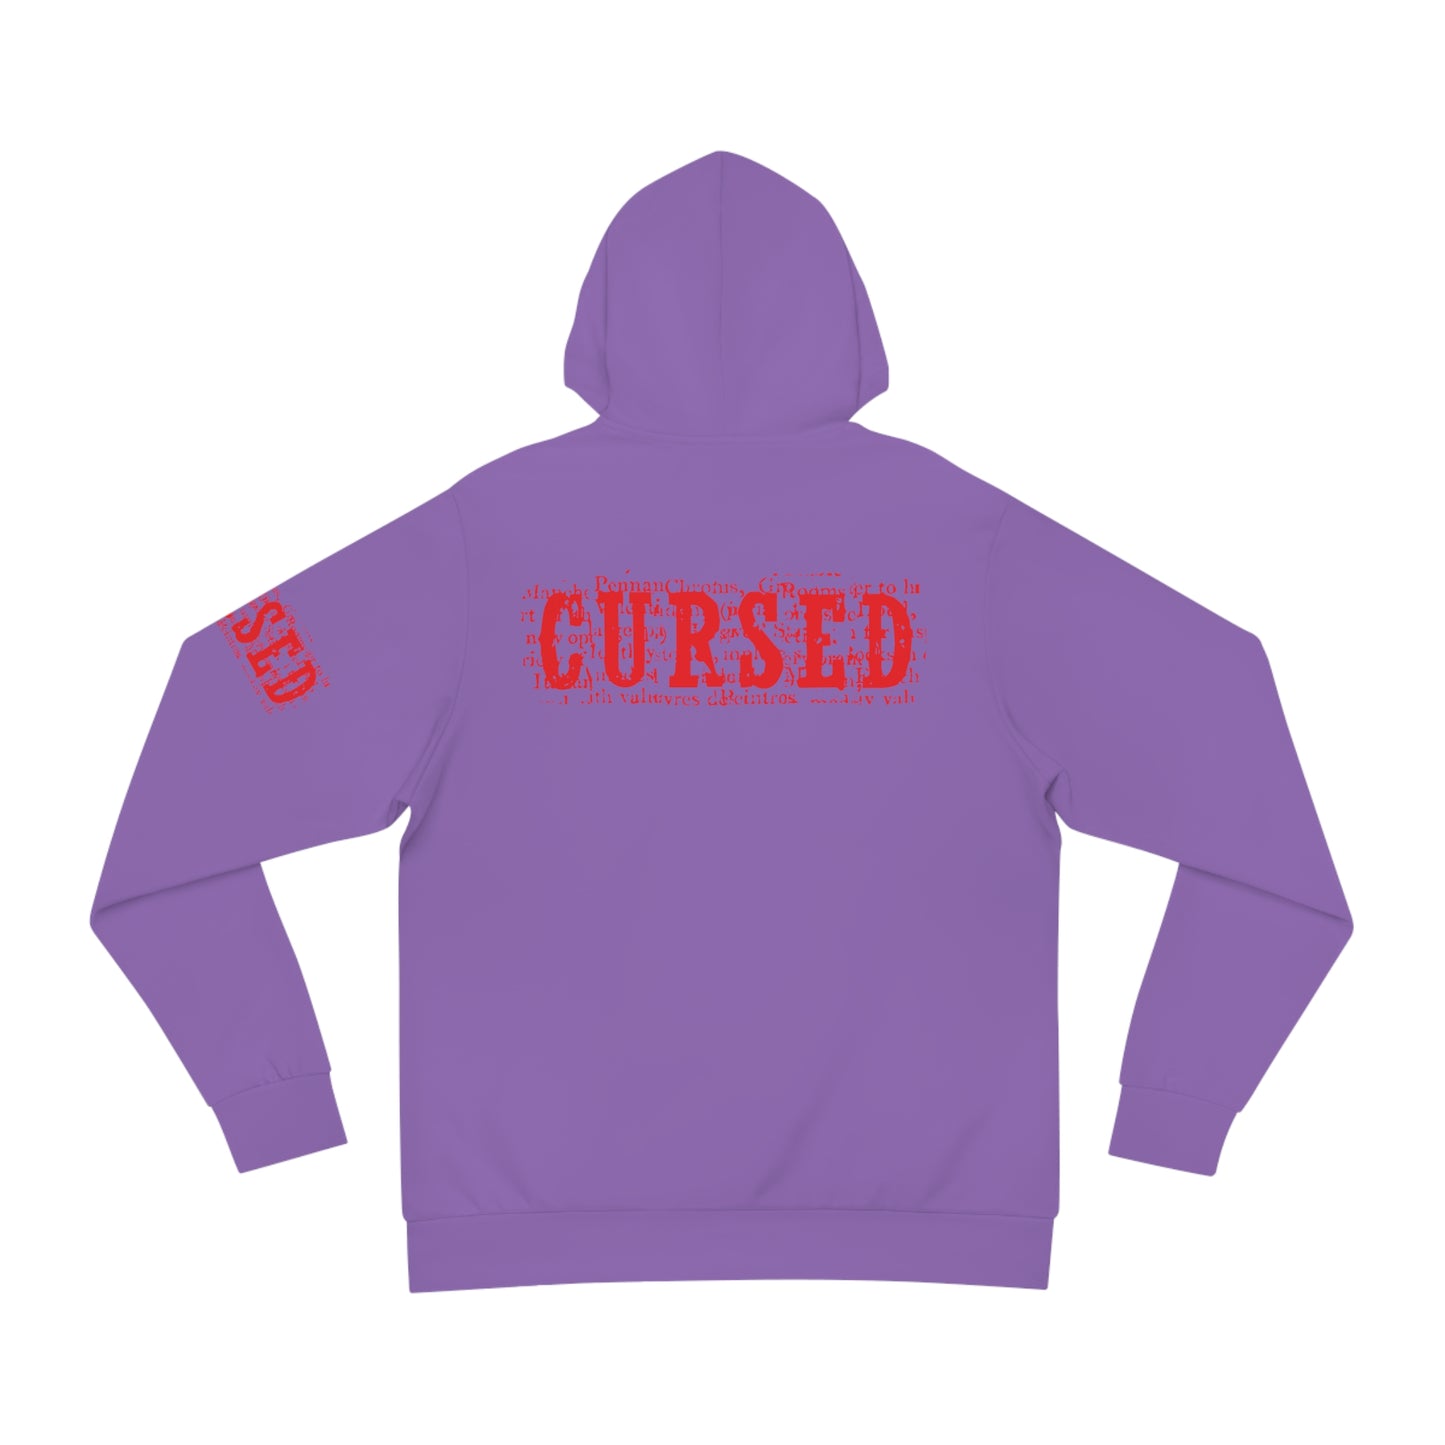 Cursed Fashion Hoodie - Unisex - Purple